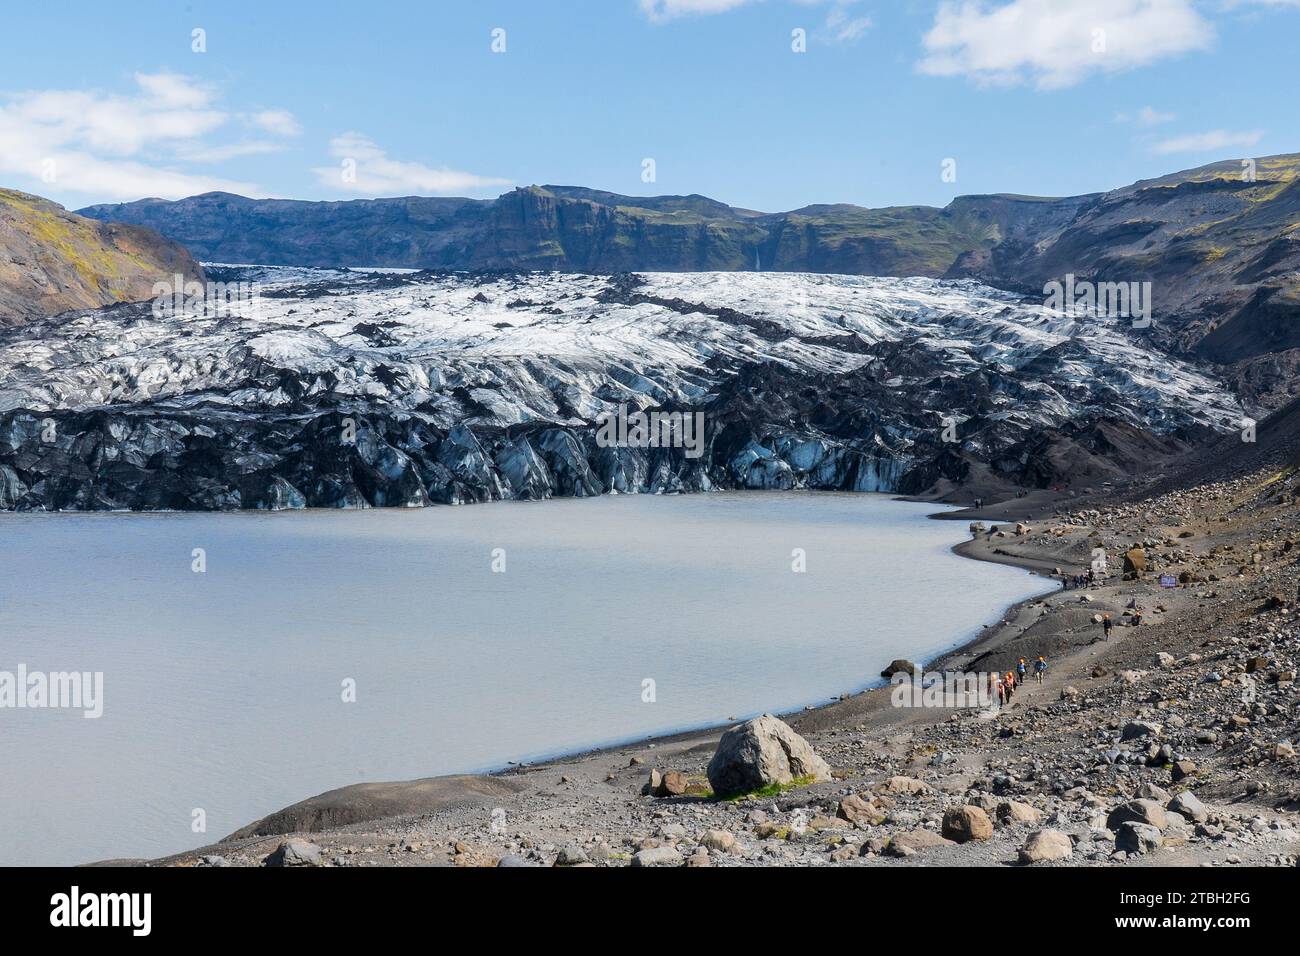 Lingua del ghiacciaio Solheimajokull del ghiacciaio Myrdalsjokull. Il Mýrdalsjökull è un ghiacciaio situato nel sud degli altopiani islandesi. Foto Stock